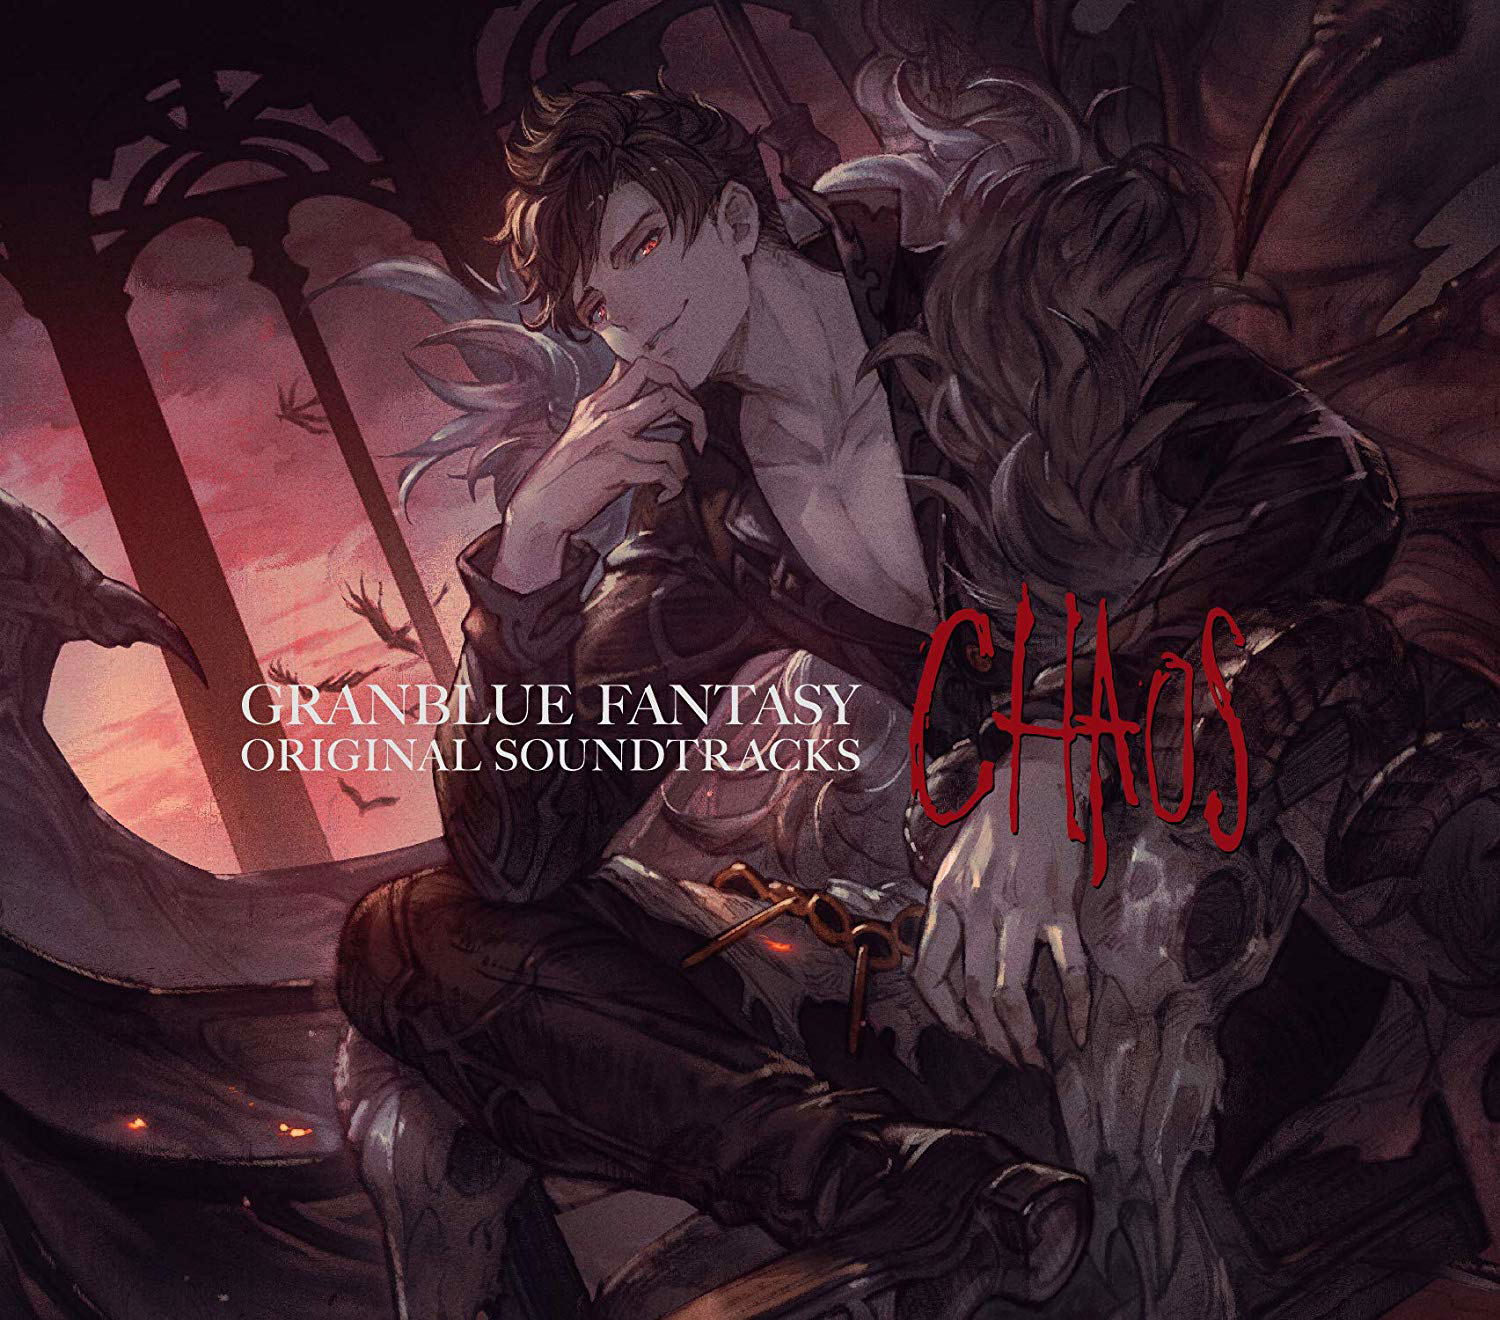 Granblue Fantasy Original Soundtracks - Chaos (Various Artists)